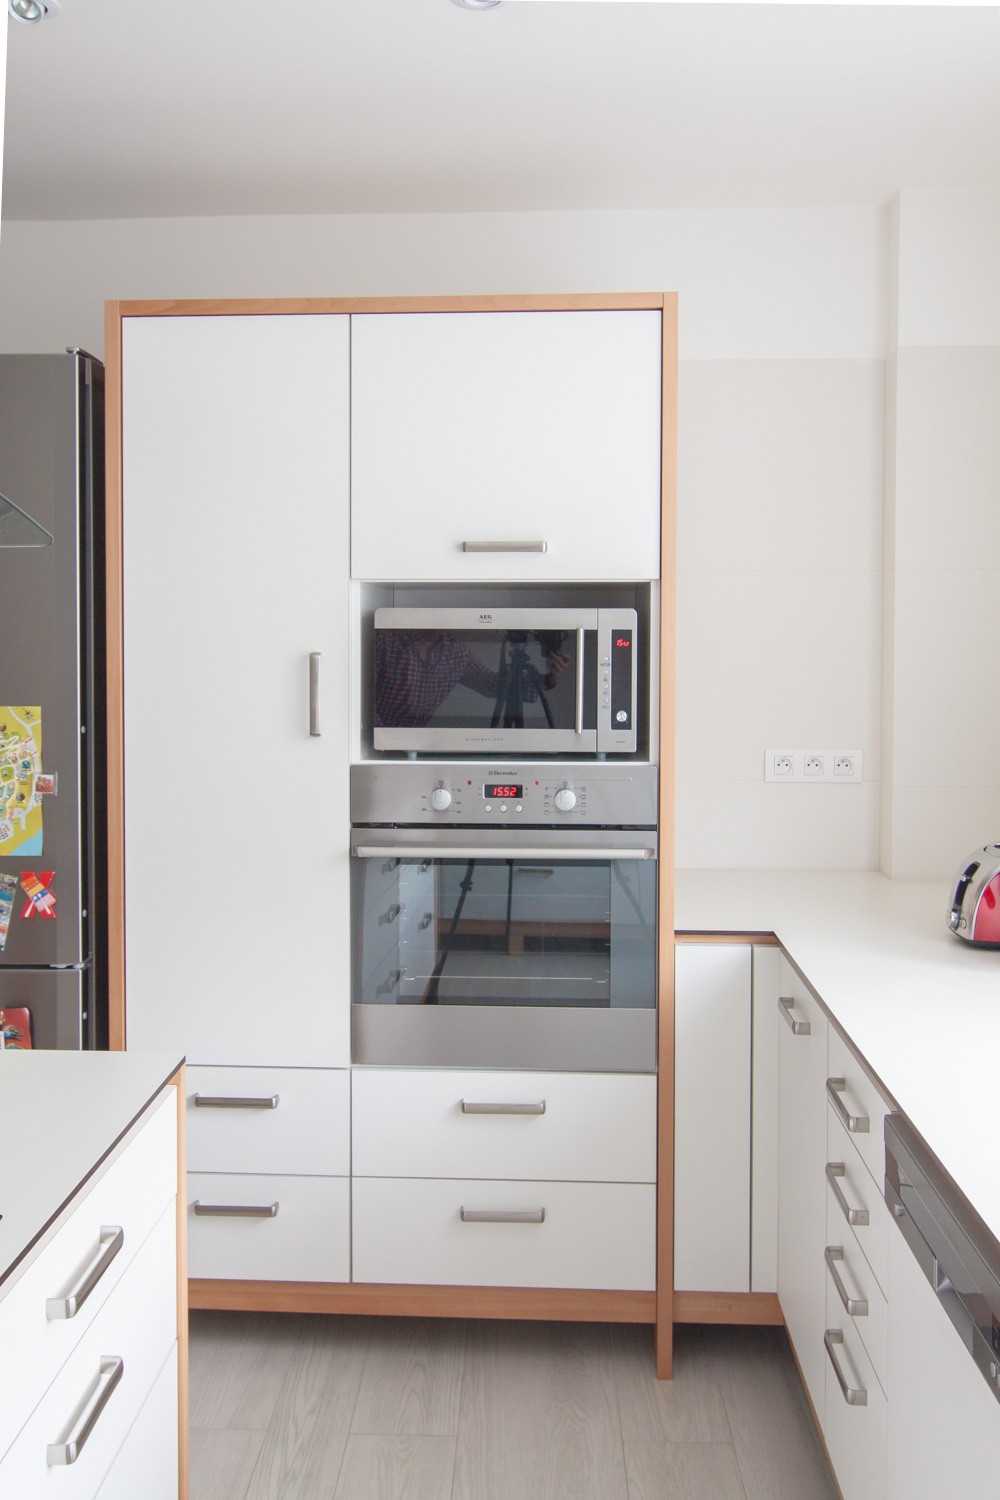 Vysoké skříně kuchyně s troubou a mikrovlnkou - David Architekti